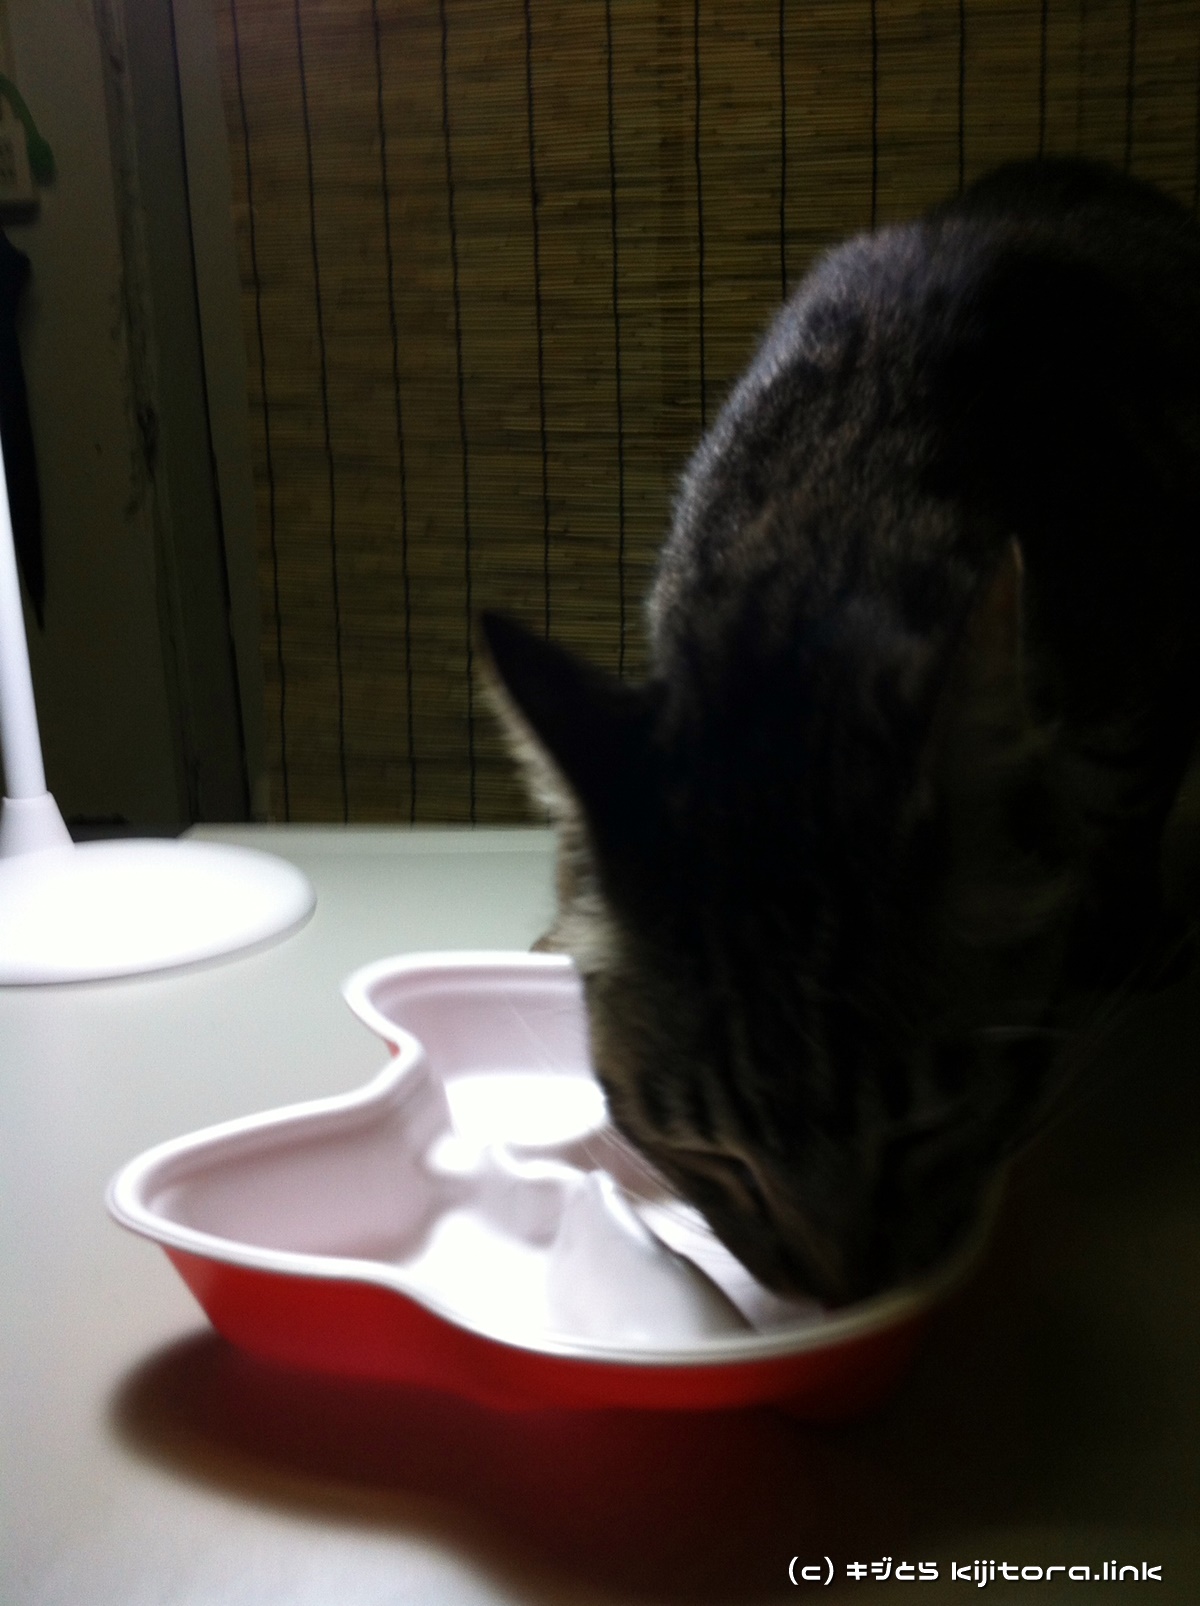 今夜の猫のご飯はジバニャン弁当ニャ♪（猫の食事2）